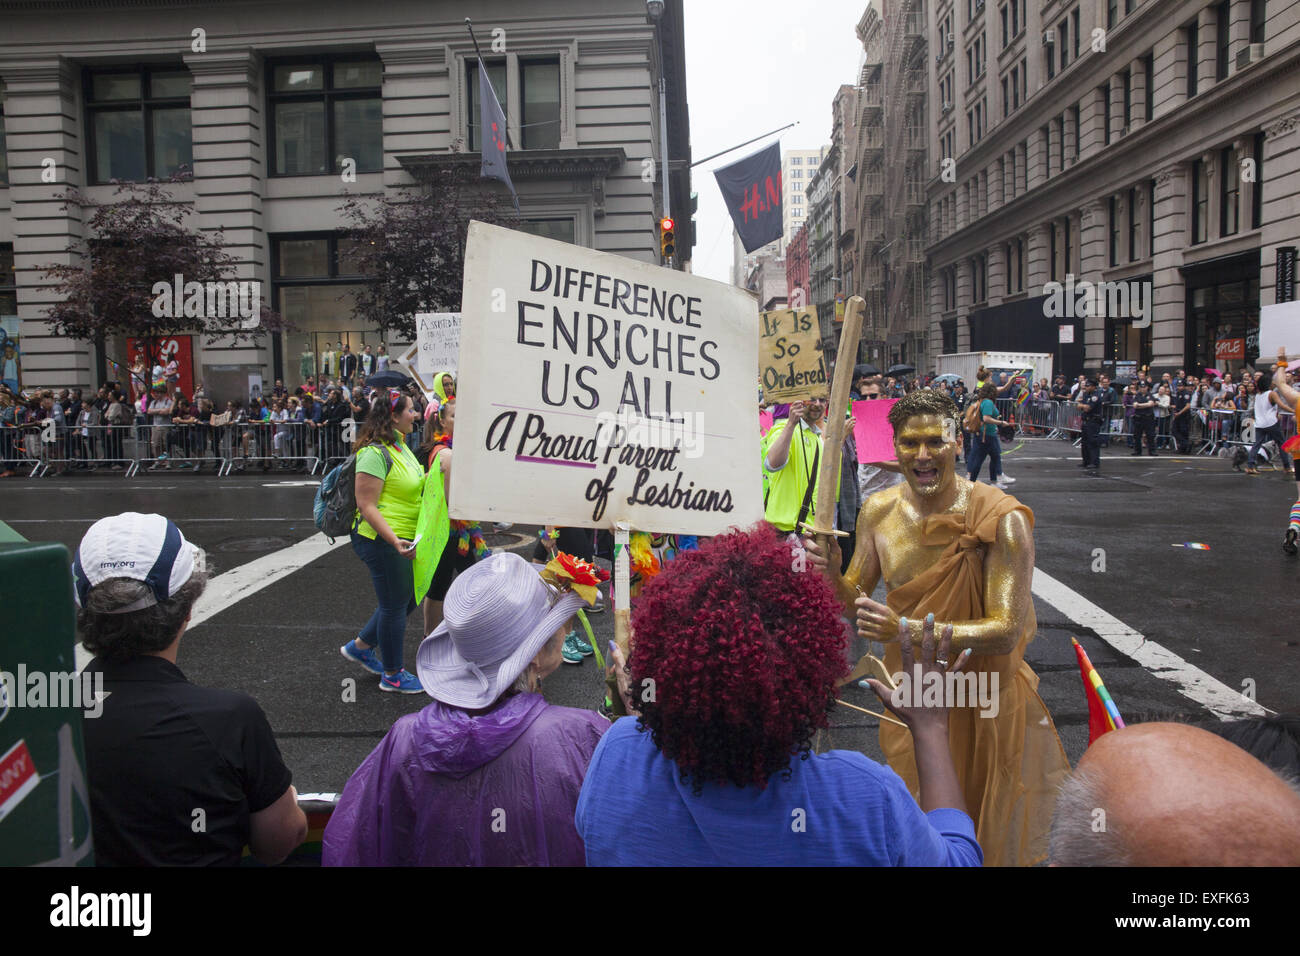 2015 gay Pride Parade sur 5th Ave. NYC jours après que la Cour suprême des États-Unis a déclaré le mariage gay légal dans les 50 États.Maman avec un signe disant, « fier parent des lesbiennes. » Banque D'Images